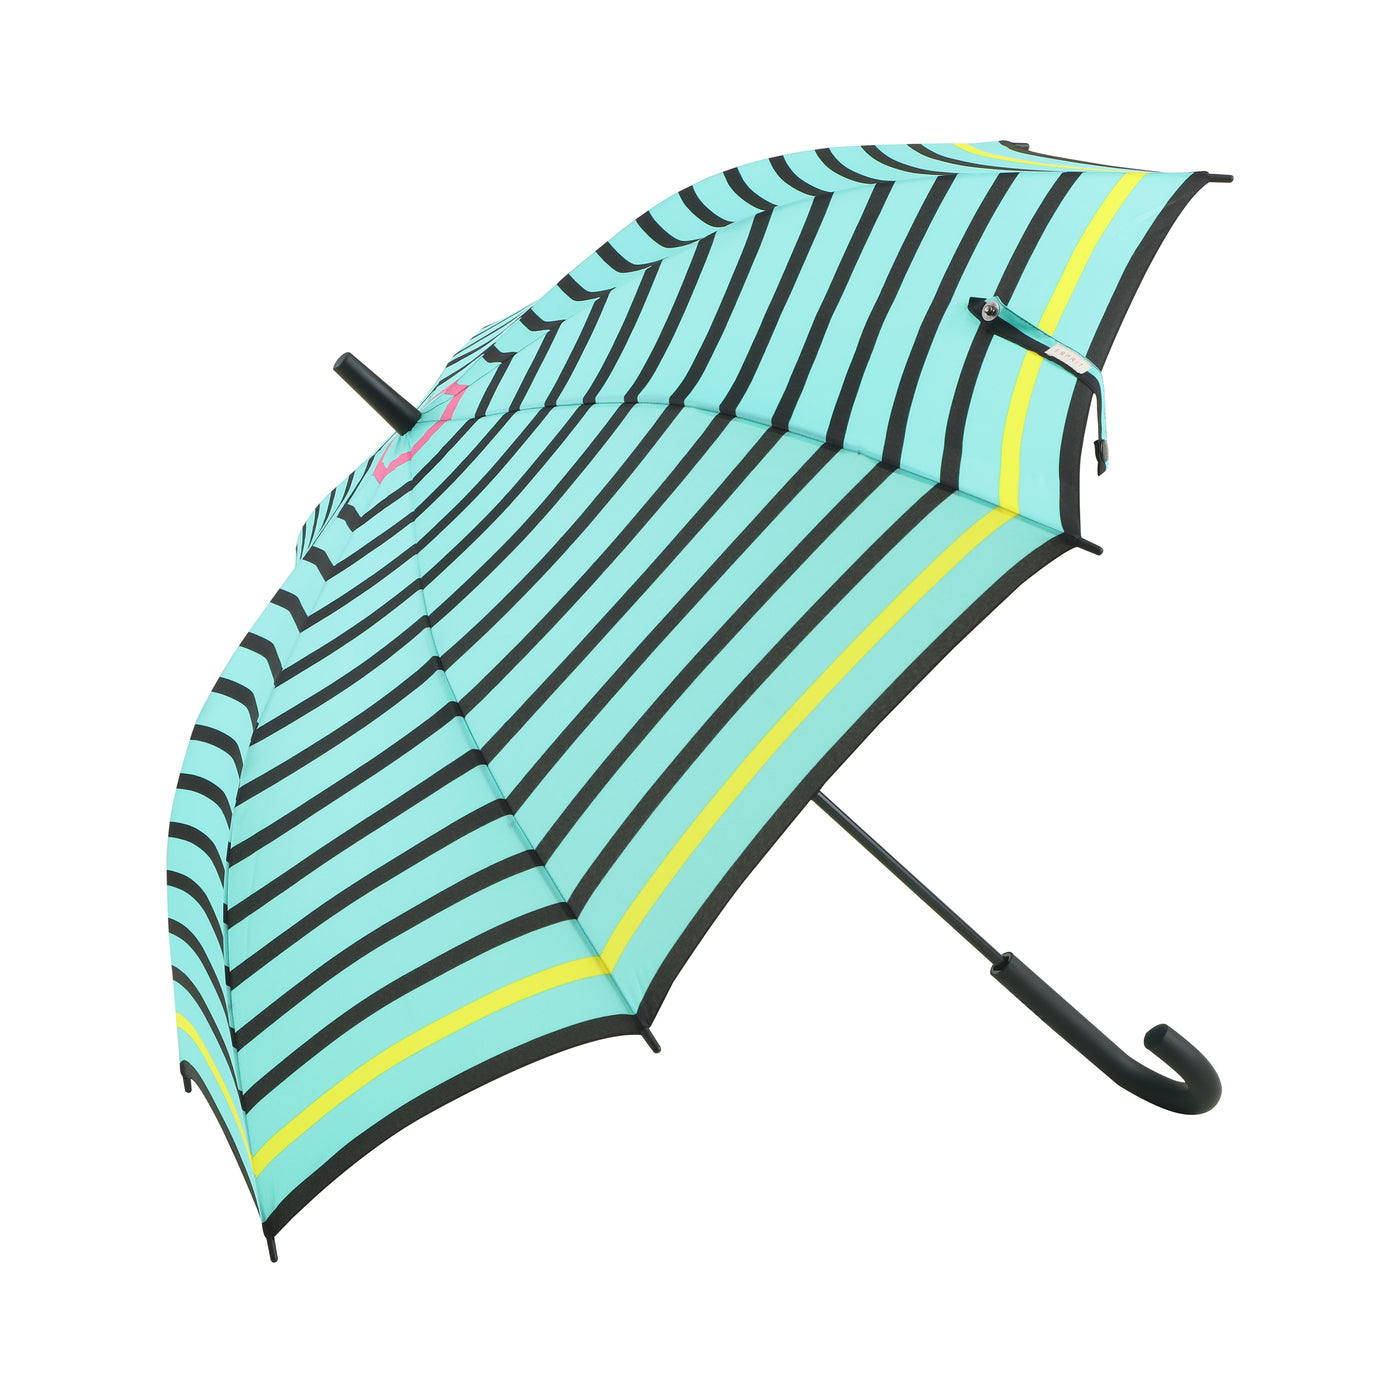 Esprit Long AC Umbrella